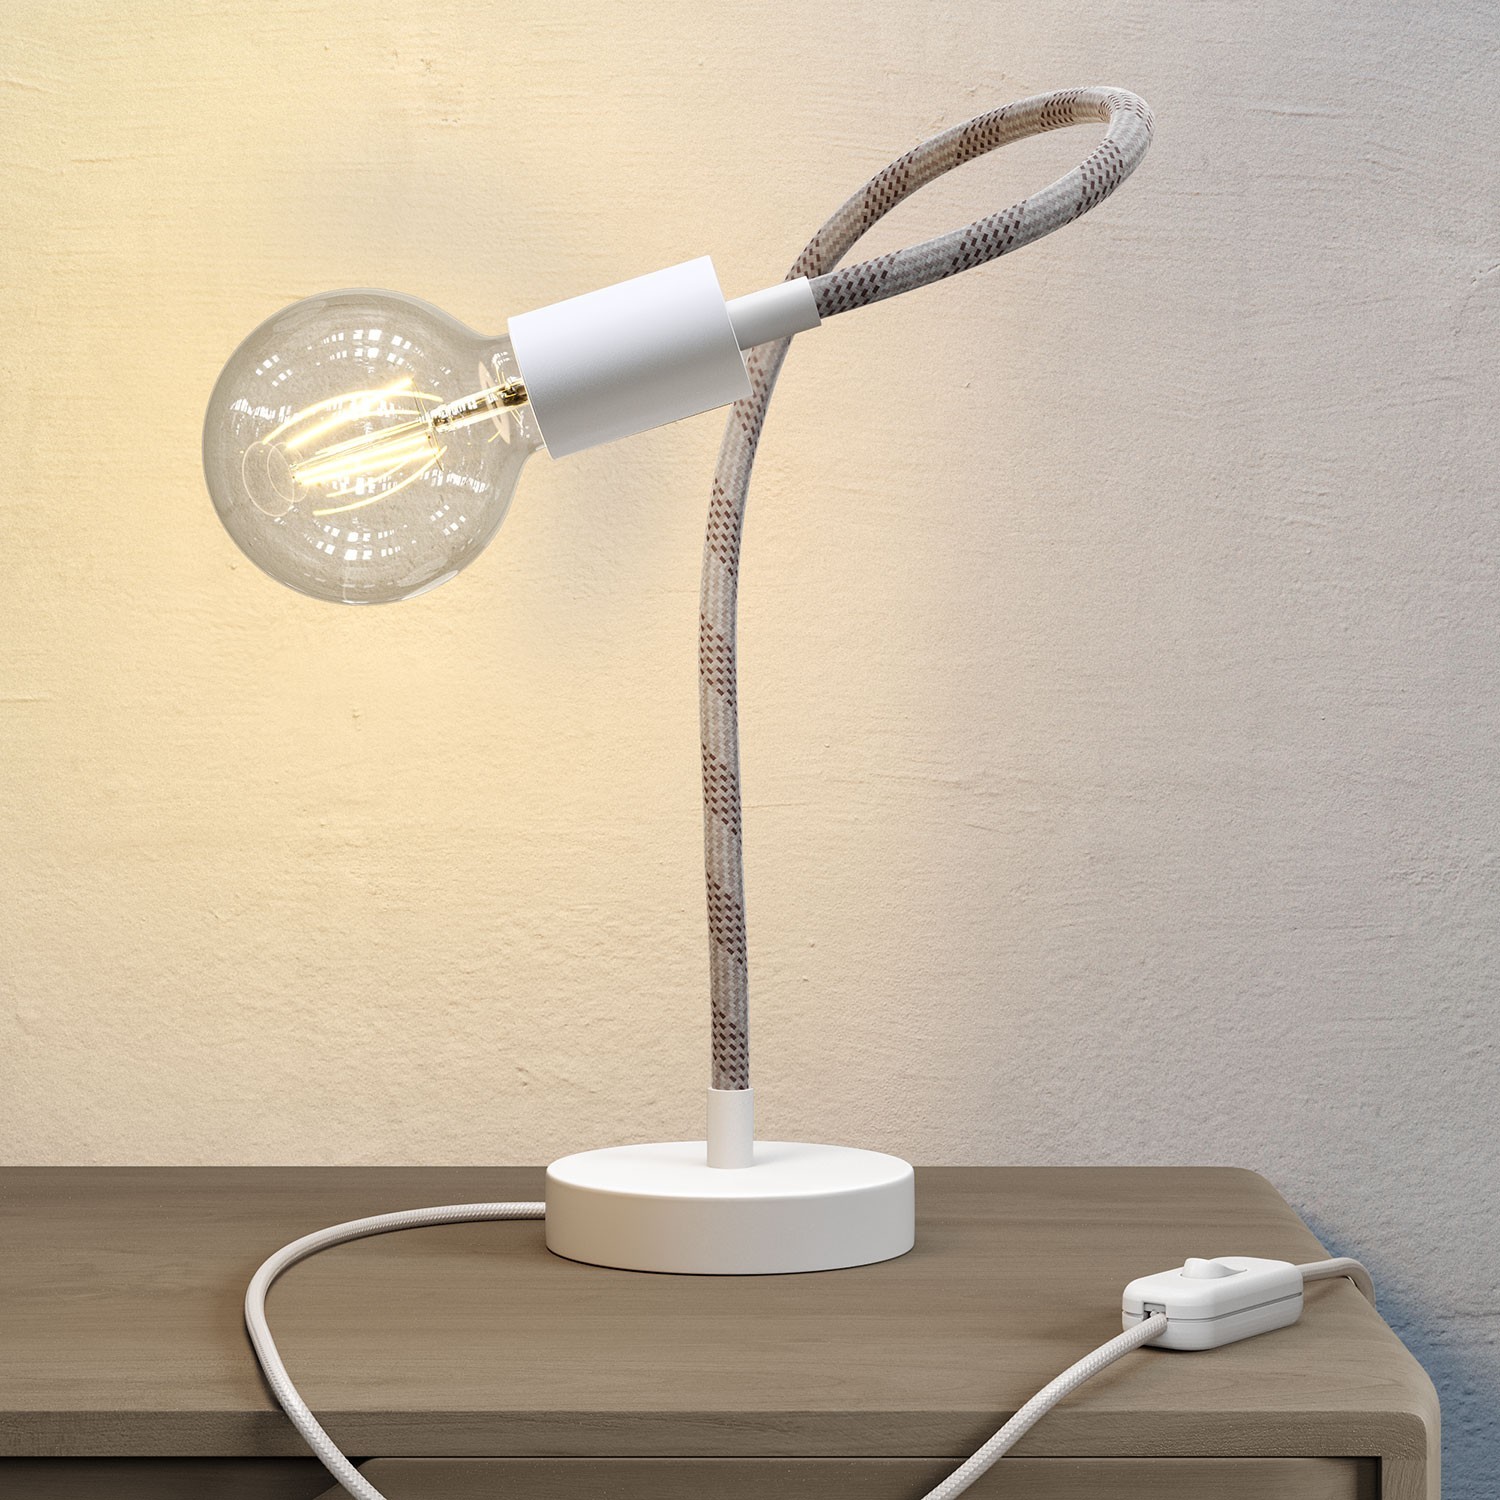 Flex rugalmas asztali lámpa szórt fényt biztosít